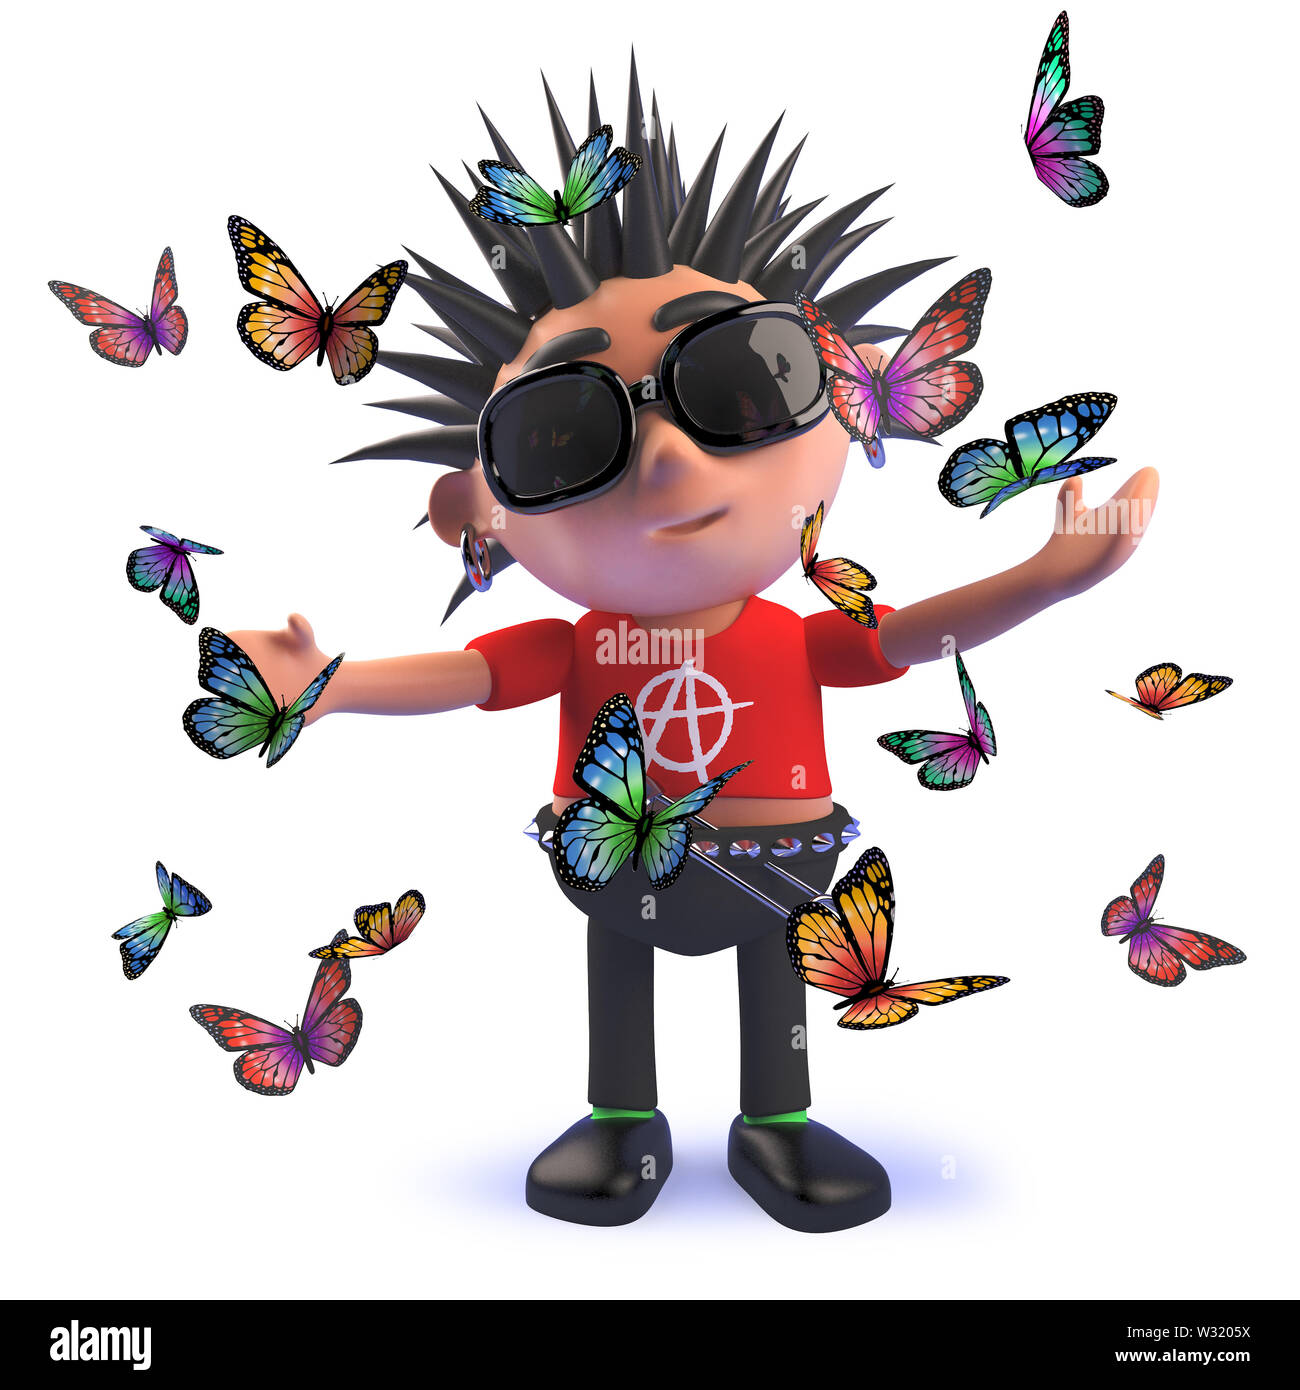 Bild in 3D von einem Cartoon Punk Rocker umgeben von Schmetterlingen gerendert Stockfoto